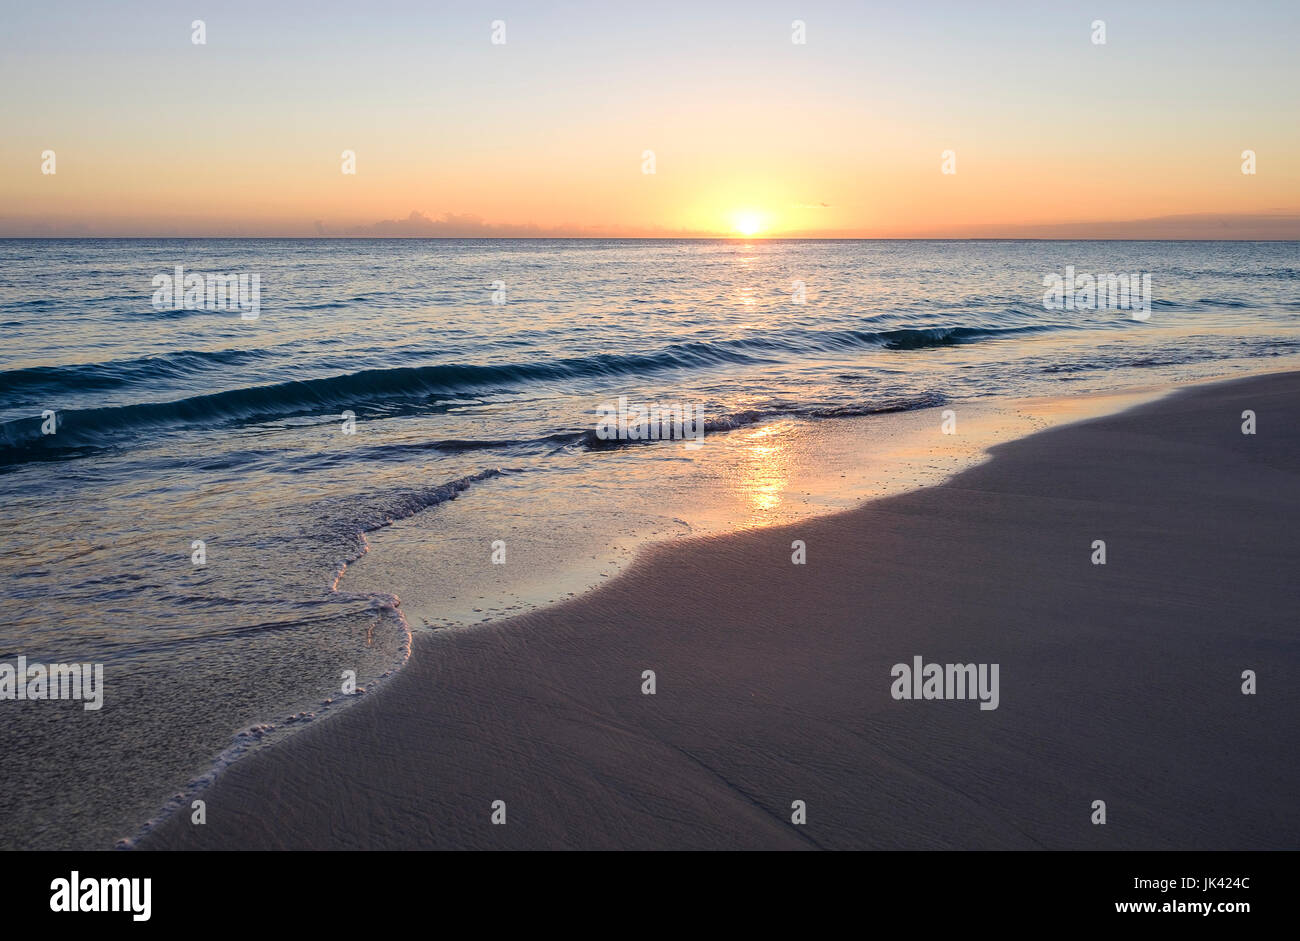 Sunset on ocean beach Stock Photo